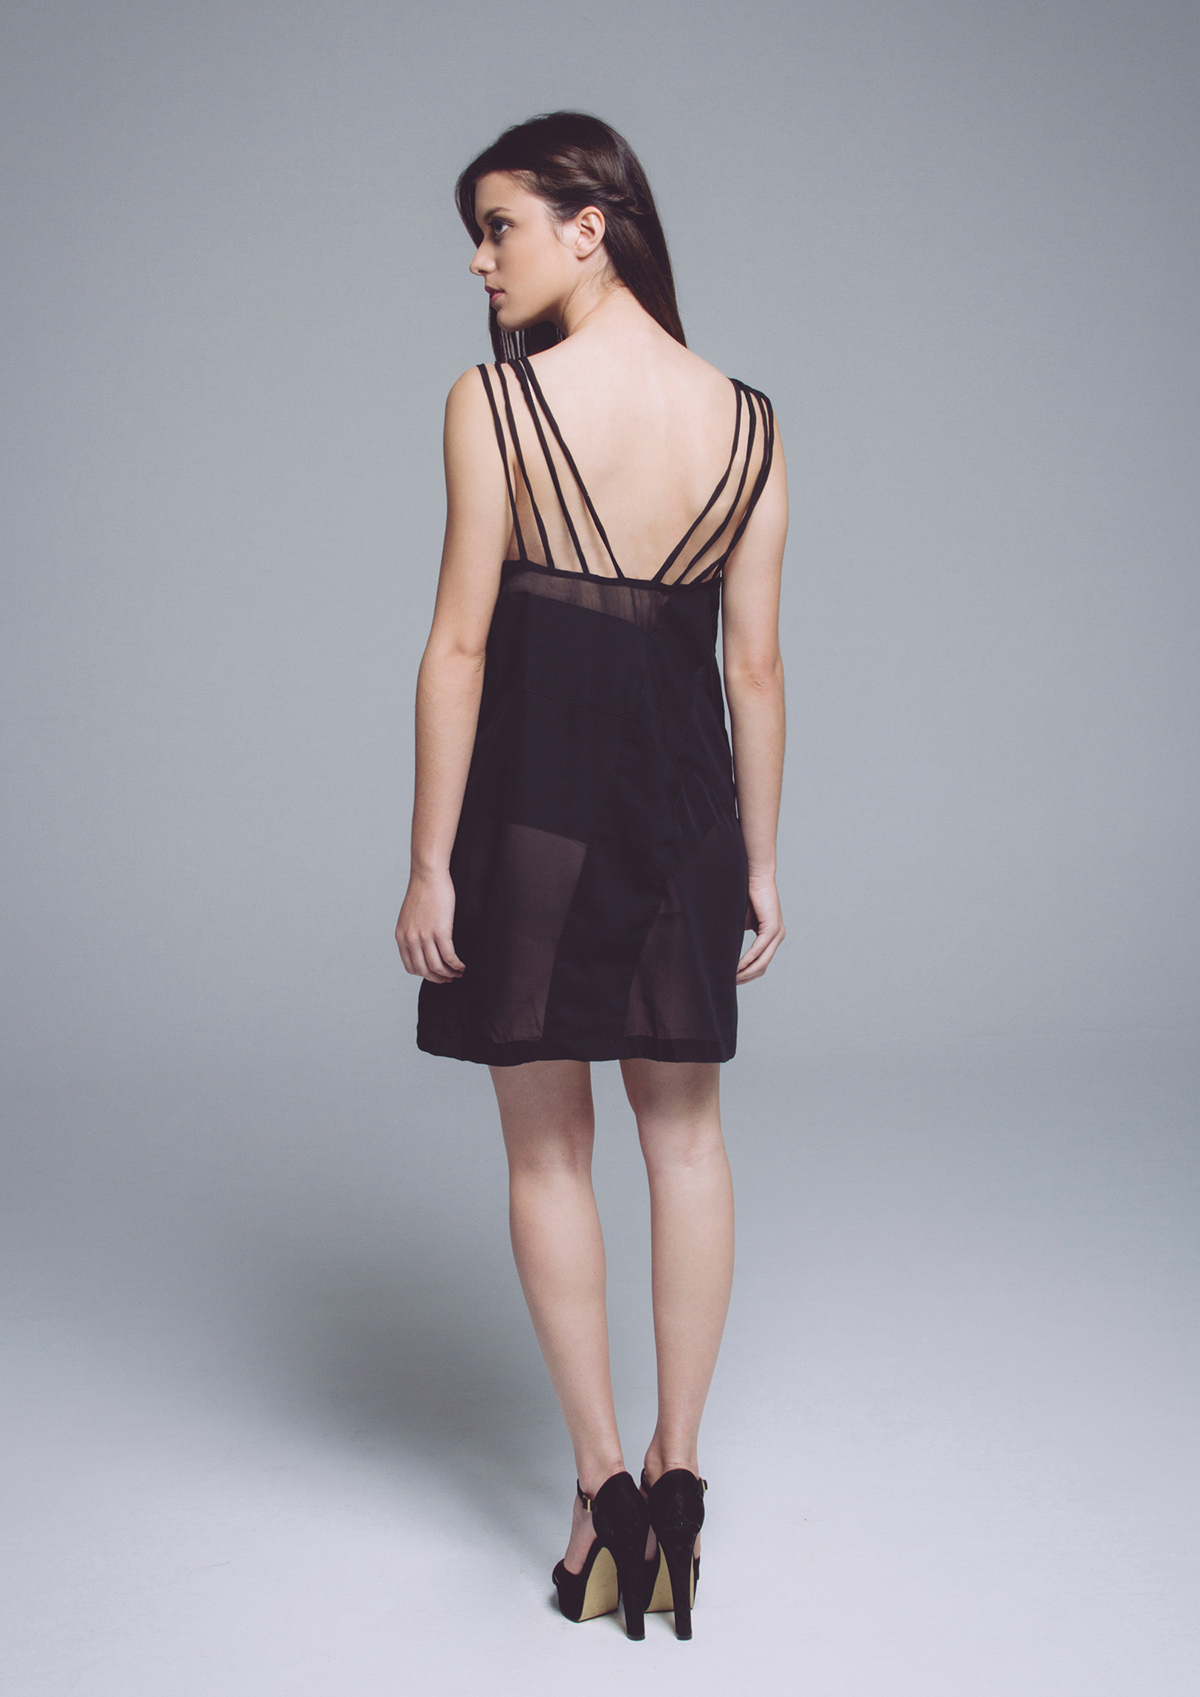 dress photoshoot black interference fabrics Style woman shape